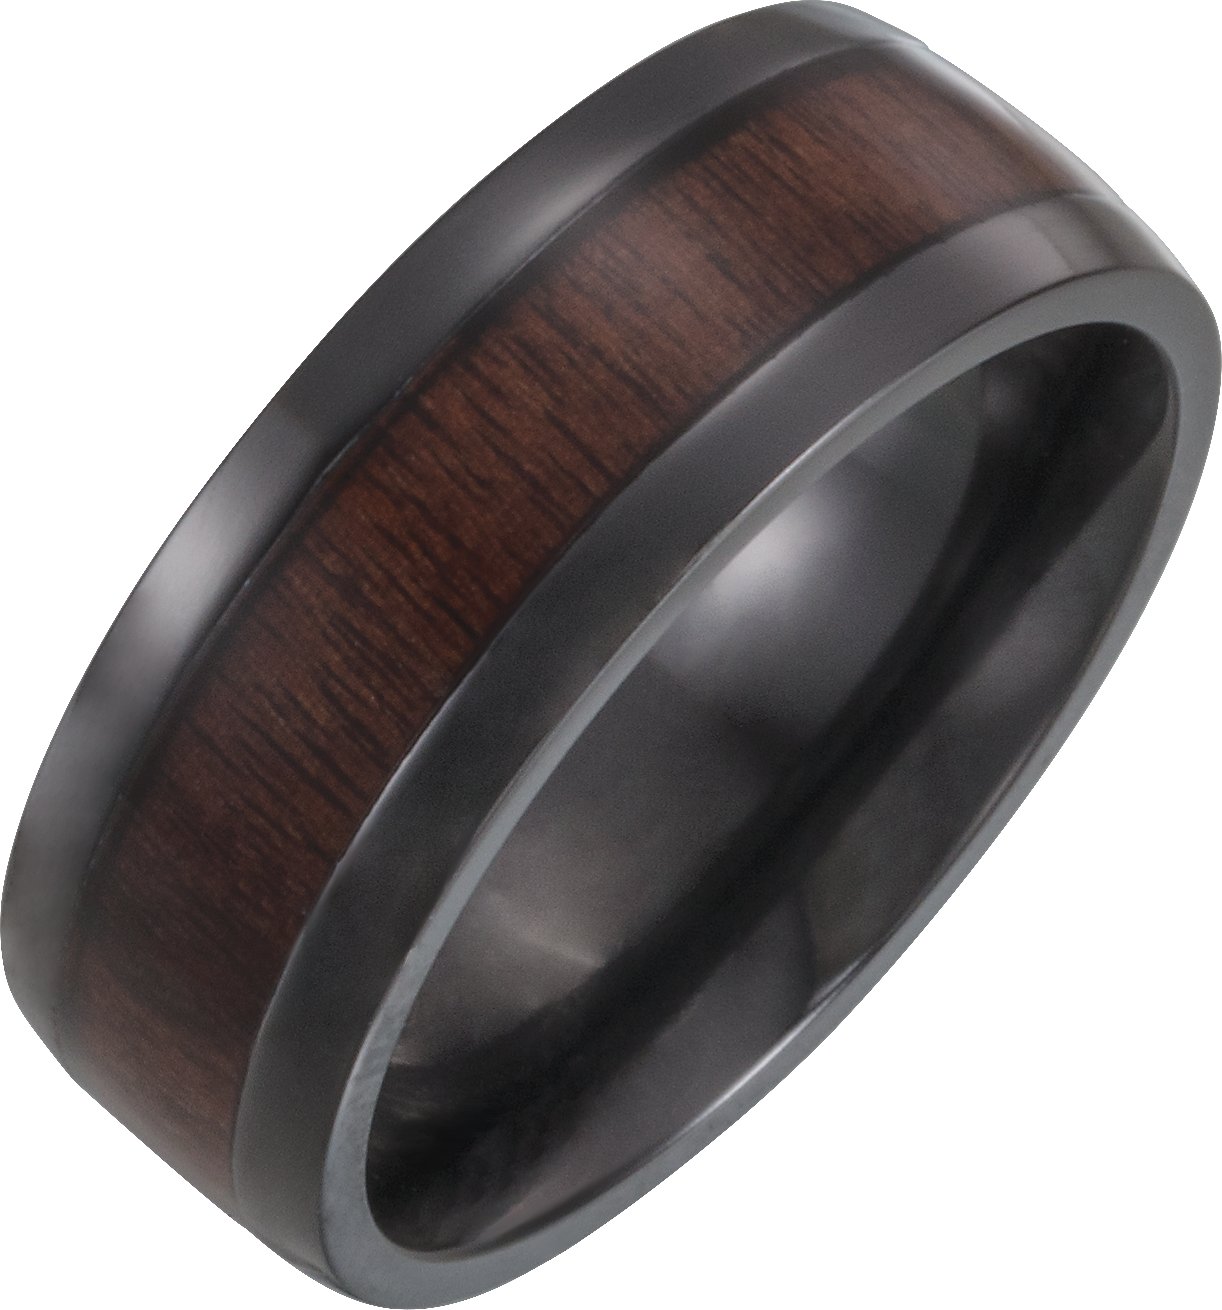 Black Titanium 8 mm Beveled-Edge Band with Wood Inlay Size 9